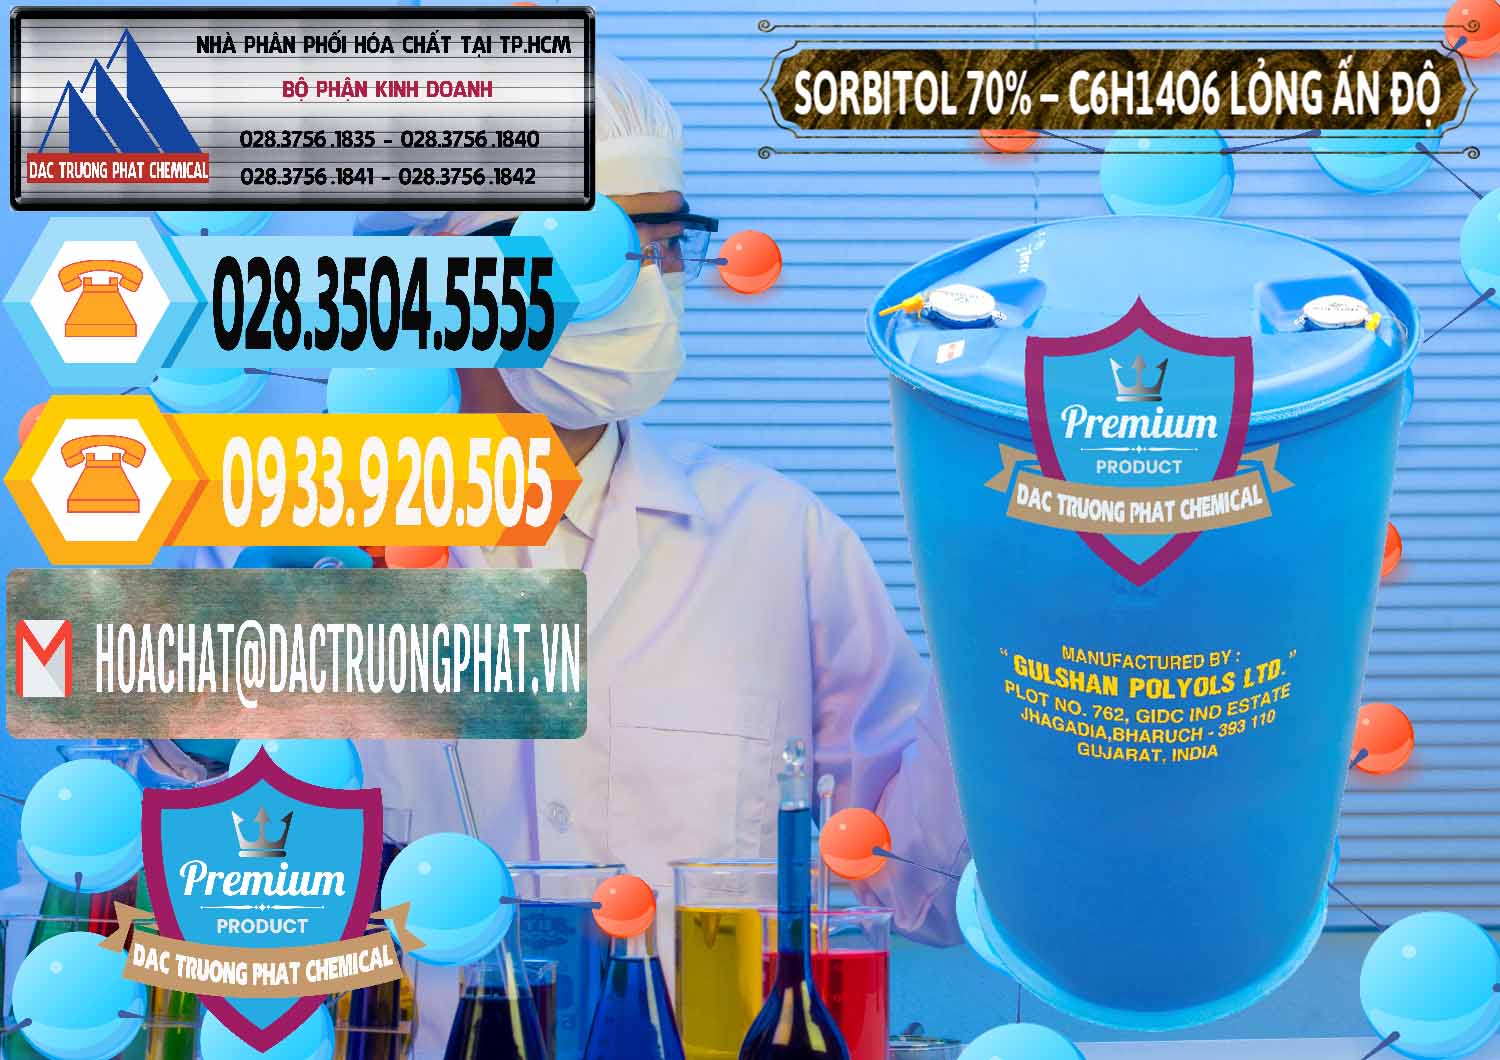 Cty chuyên cung ứng ( bán ) Sorbitol - C6H14O6 Lỏng 70% Food Grade Ấn Độ India - 0152 - Công ty phân phối _ bán hóa chất tại TP.HCM - hoachattayrua.net